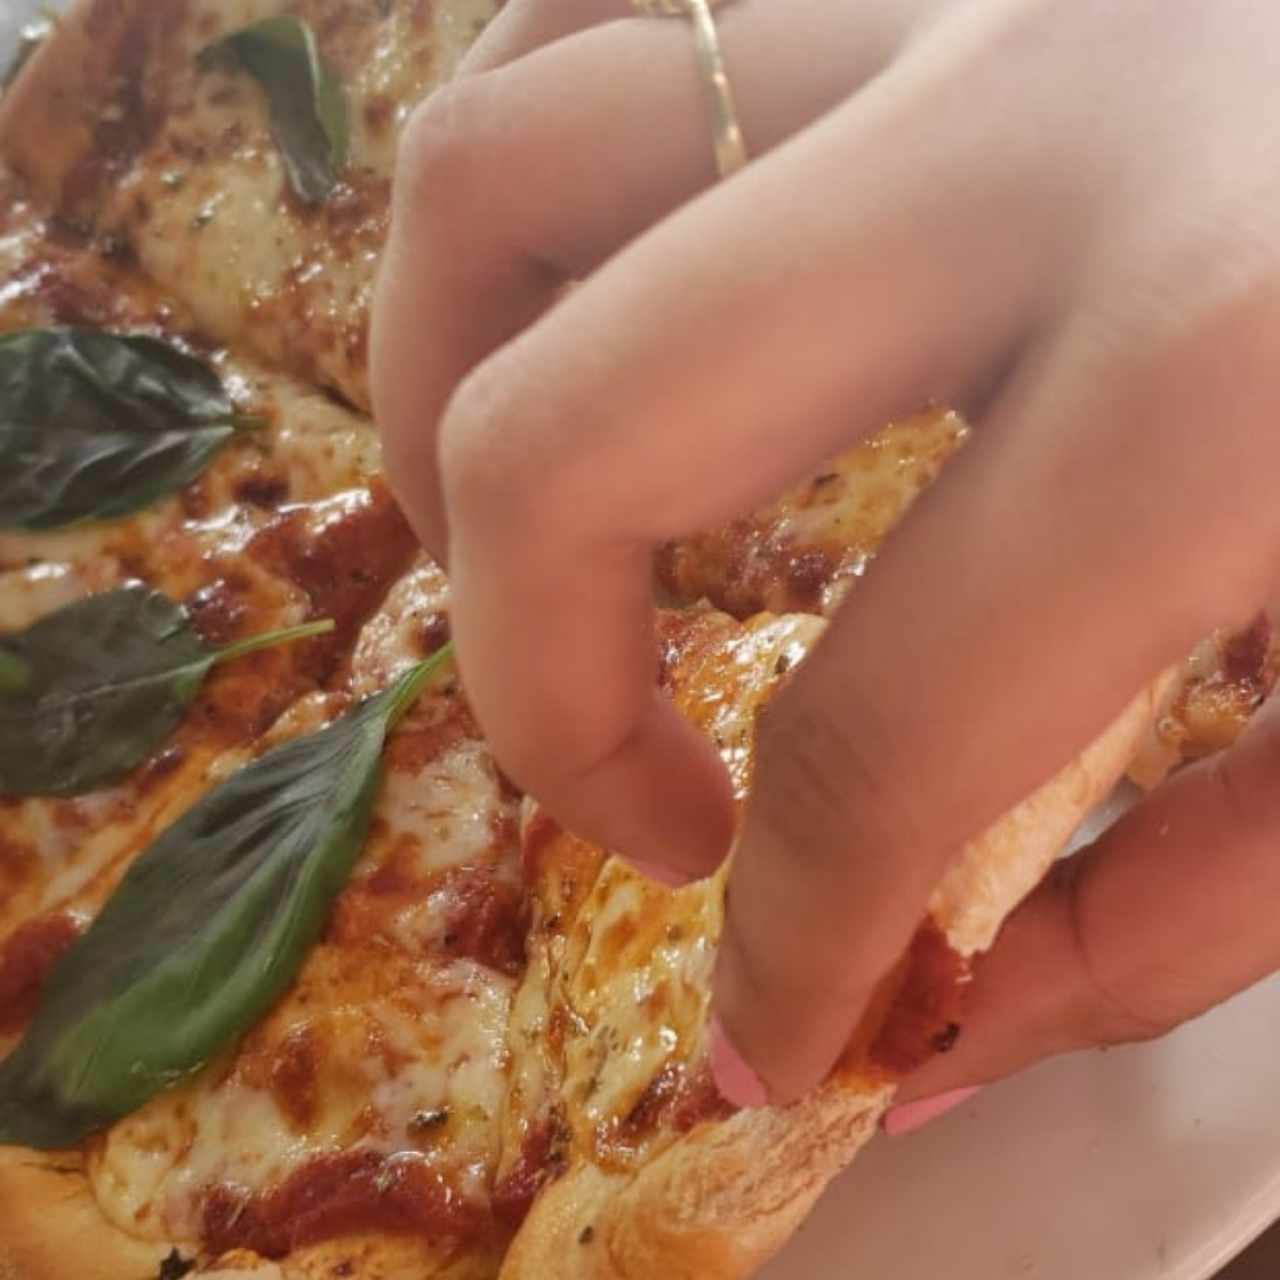 pizza margarita 